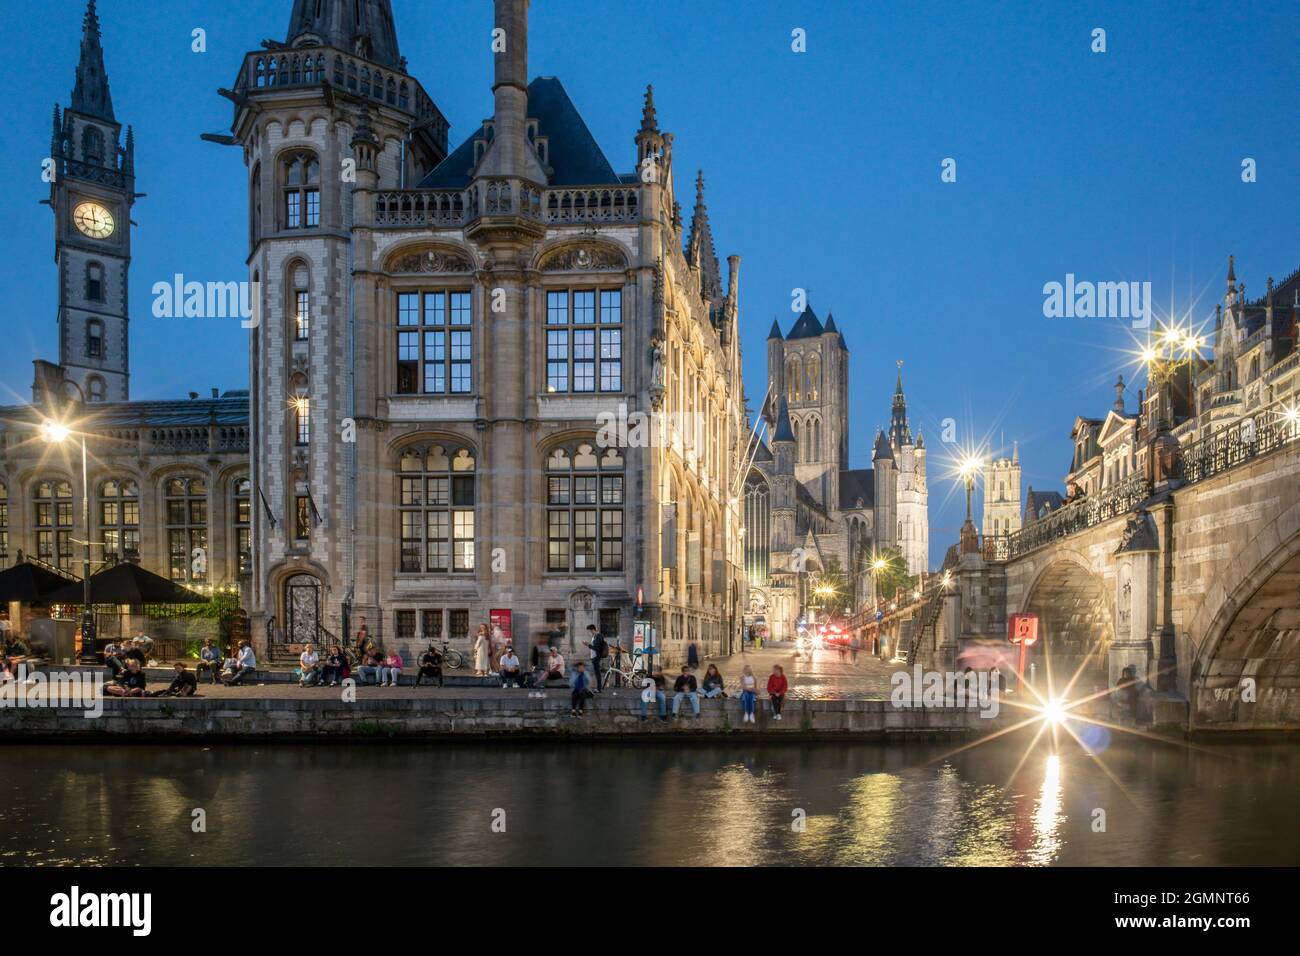 historisches Zentrum von Gent am Abend, Promenade an der Graslei, Zannier Hotels 1898 die Post, St. Nikolauskirche, Belfried, Stadtturm, Gent, Fland Stockfoto